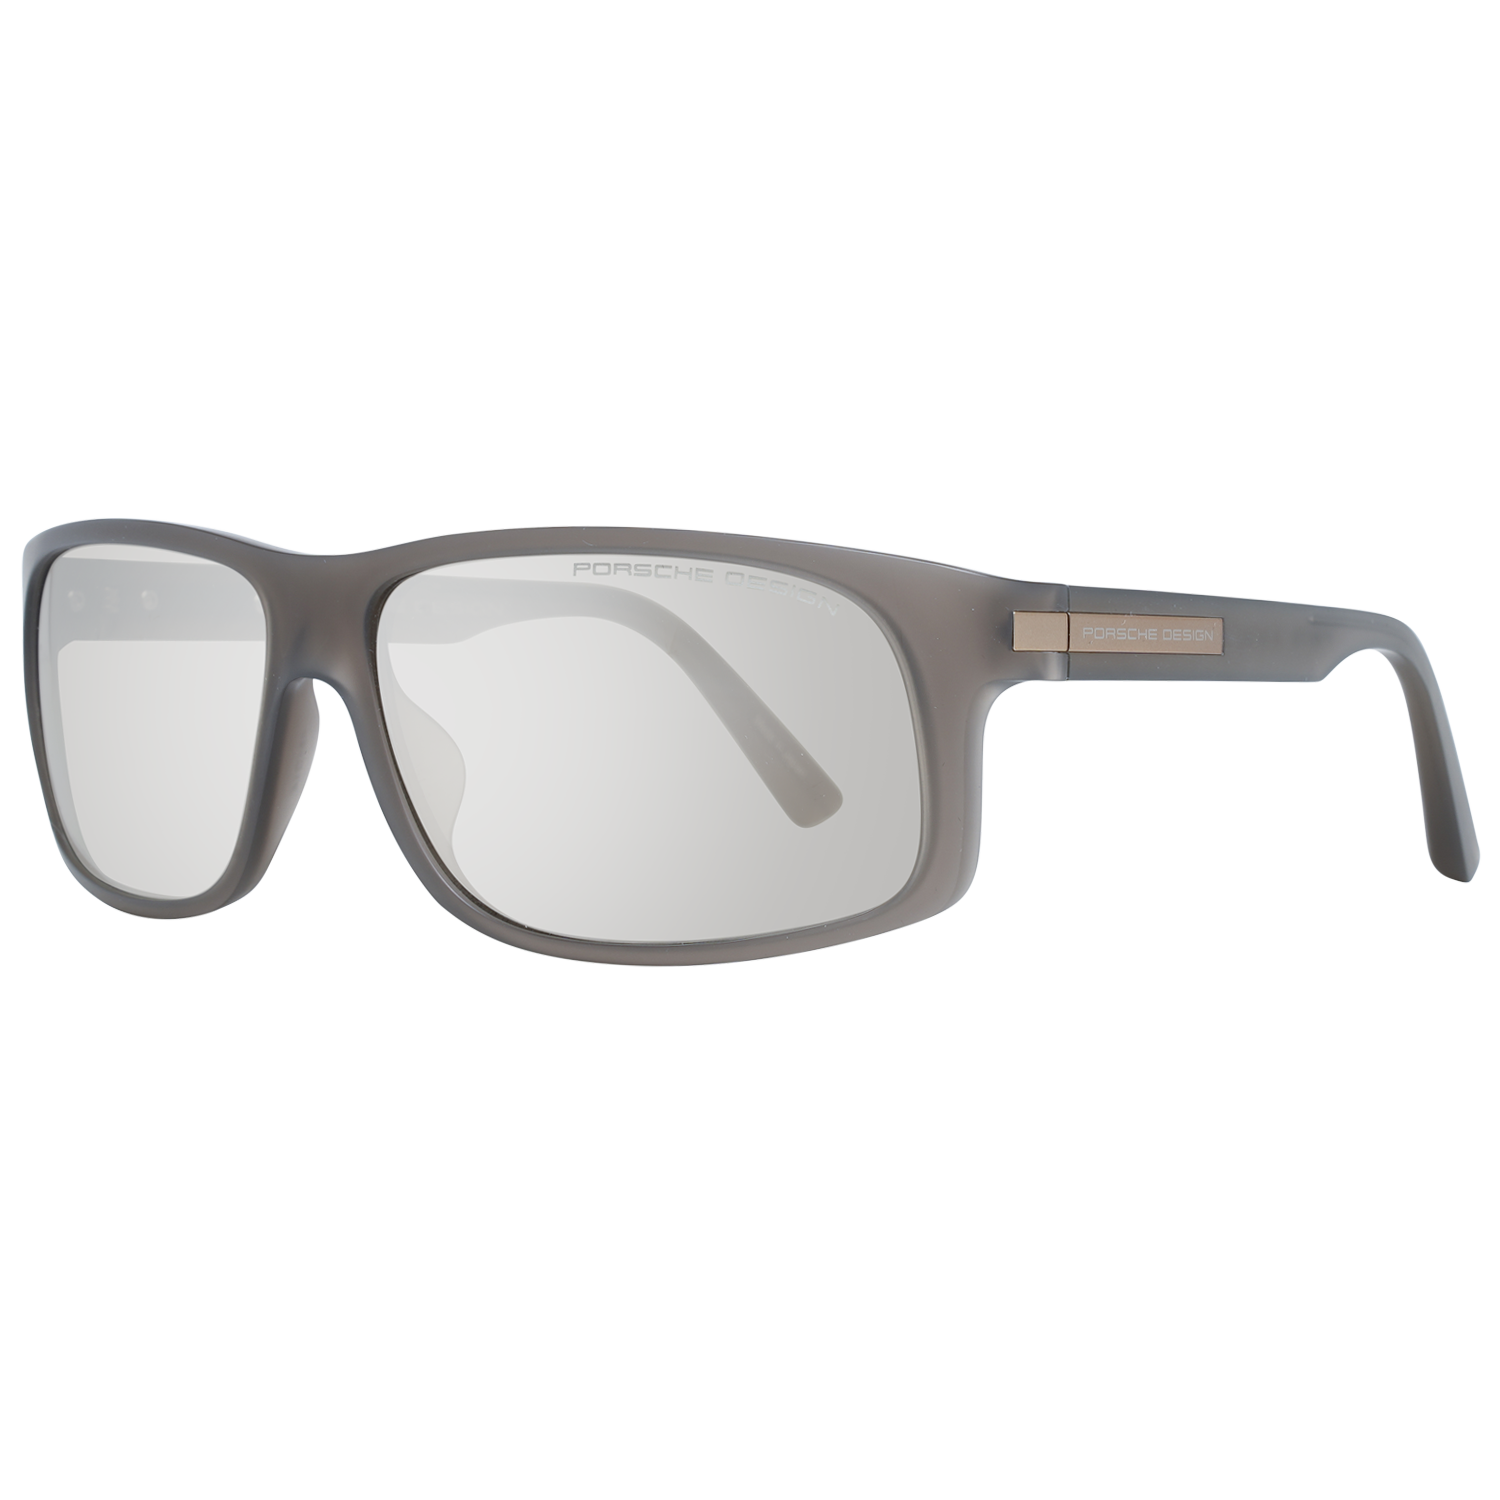 Porsche Design Sunglasses Porsche Design Sunglasses P8572 B 64 Eyeglasses Eyewear UK USA Australia 